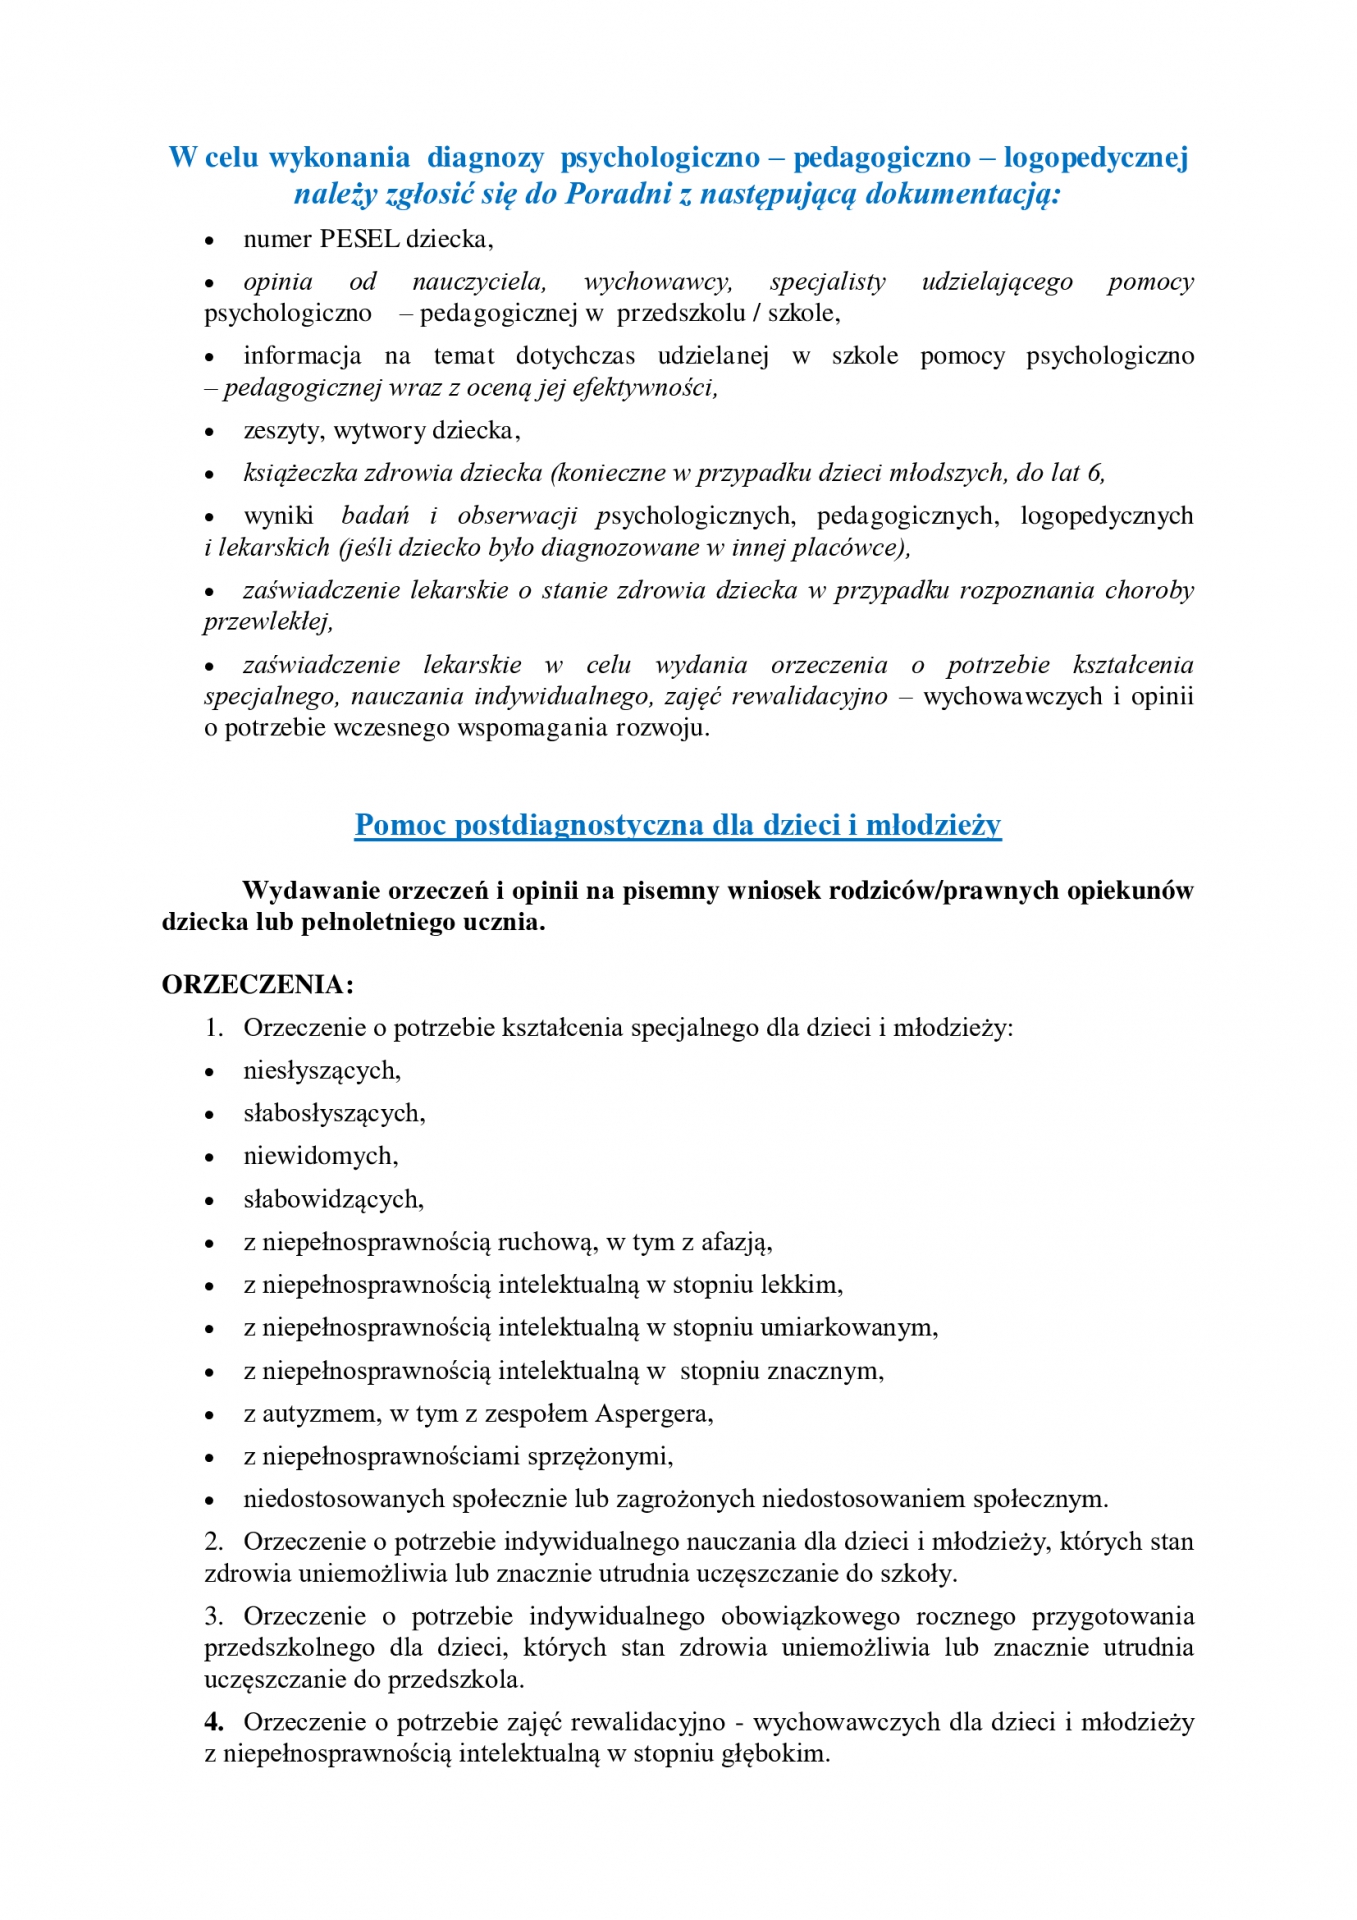 Oferta Poradni Psychologiczno-Pedagogicznej w Makowie Mazowieckim. Strona 2